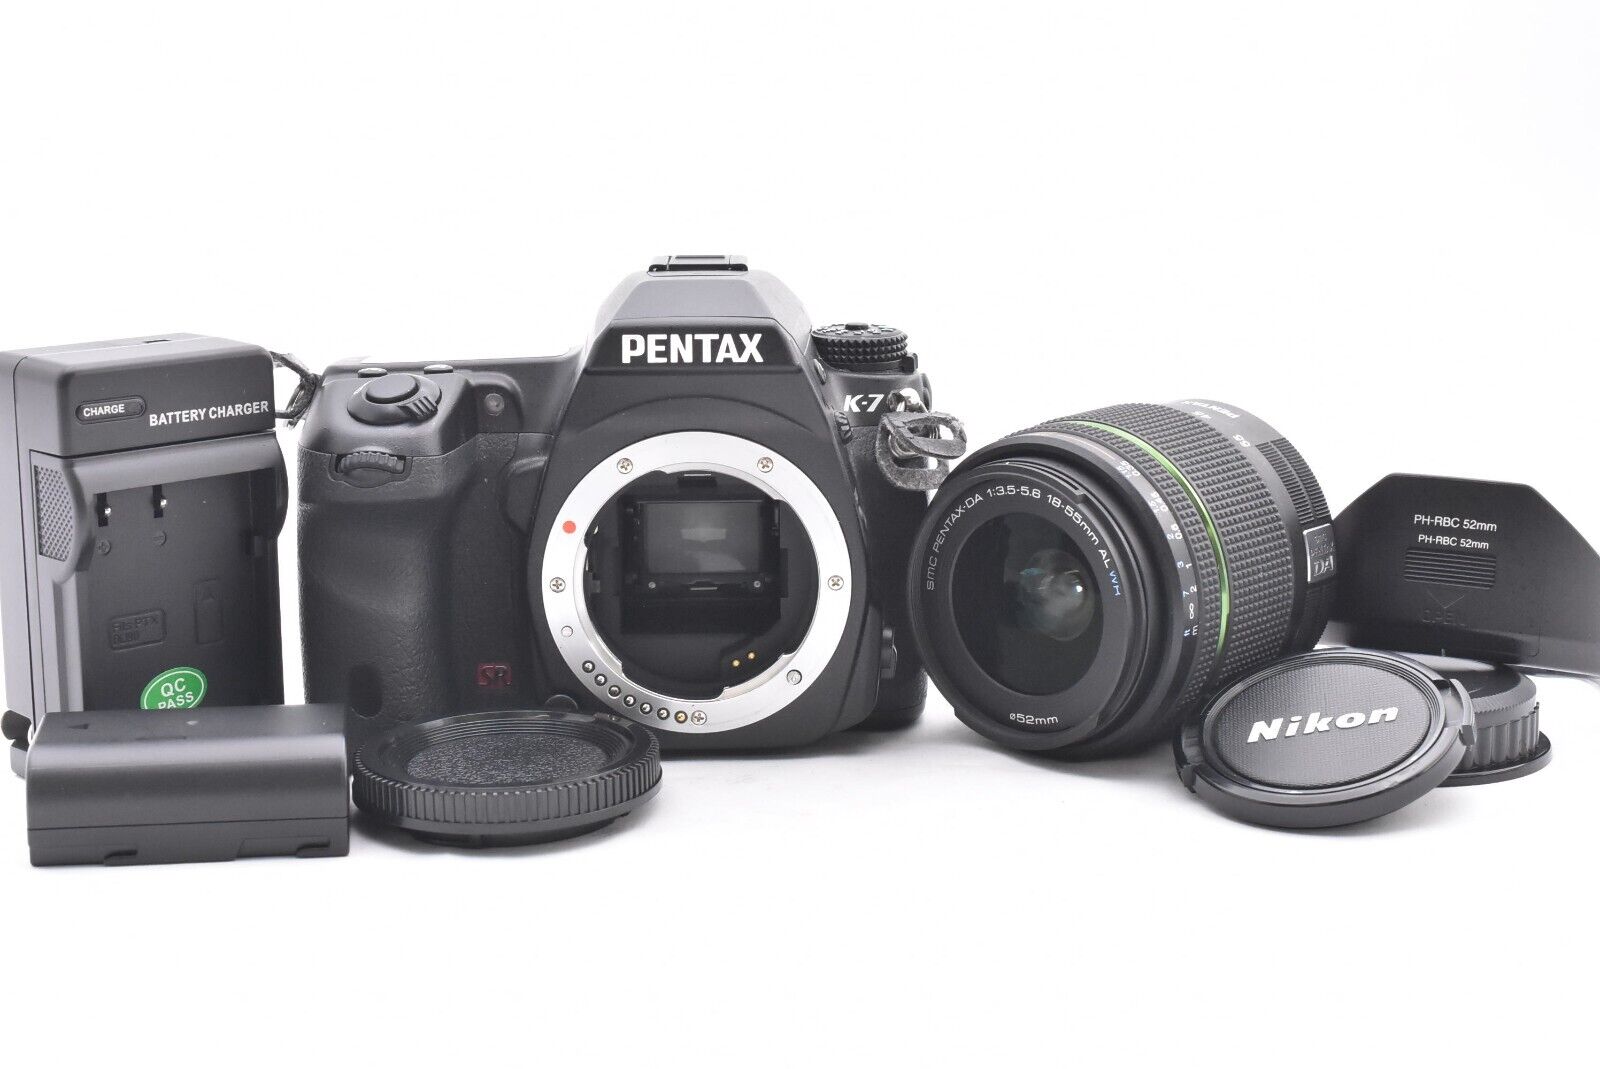 PENTAX K-7 Digital SLR Camera Black / smc DA 18-55mm F3.5-5.6 AL WR [t8185]